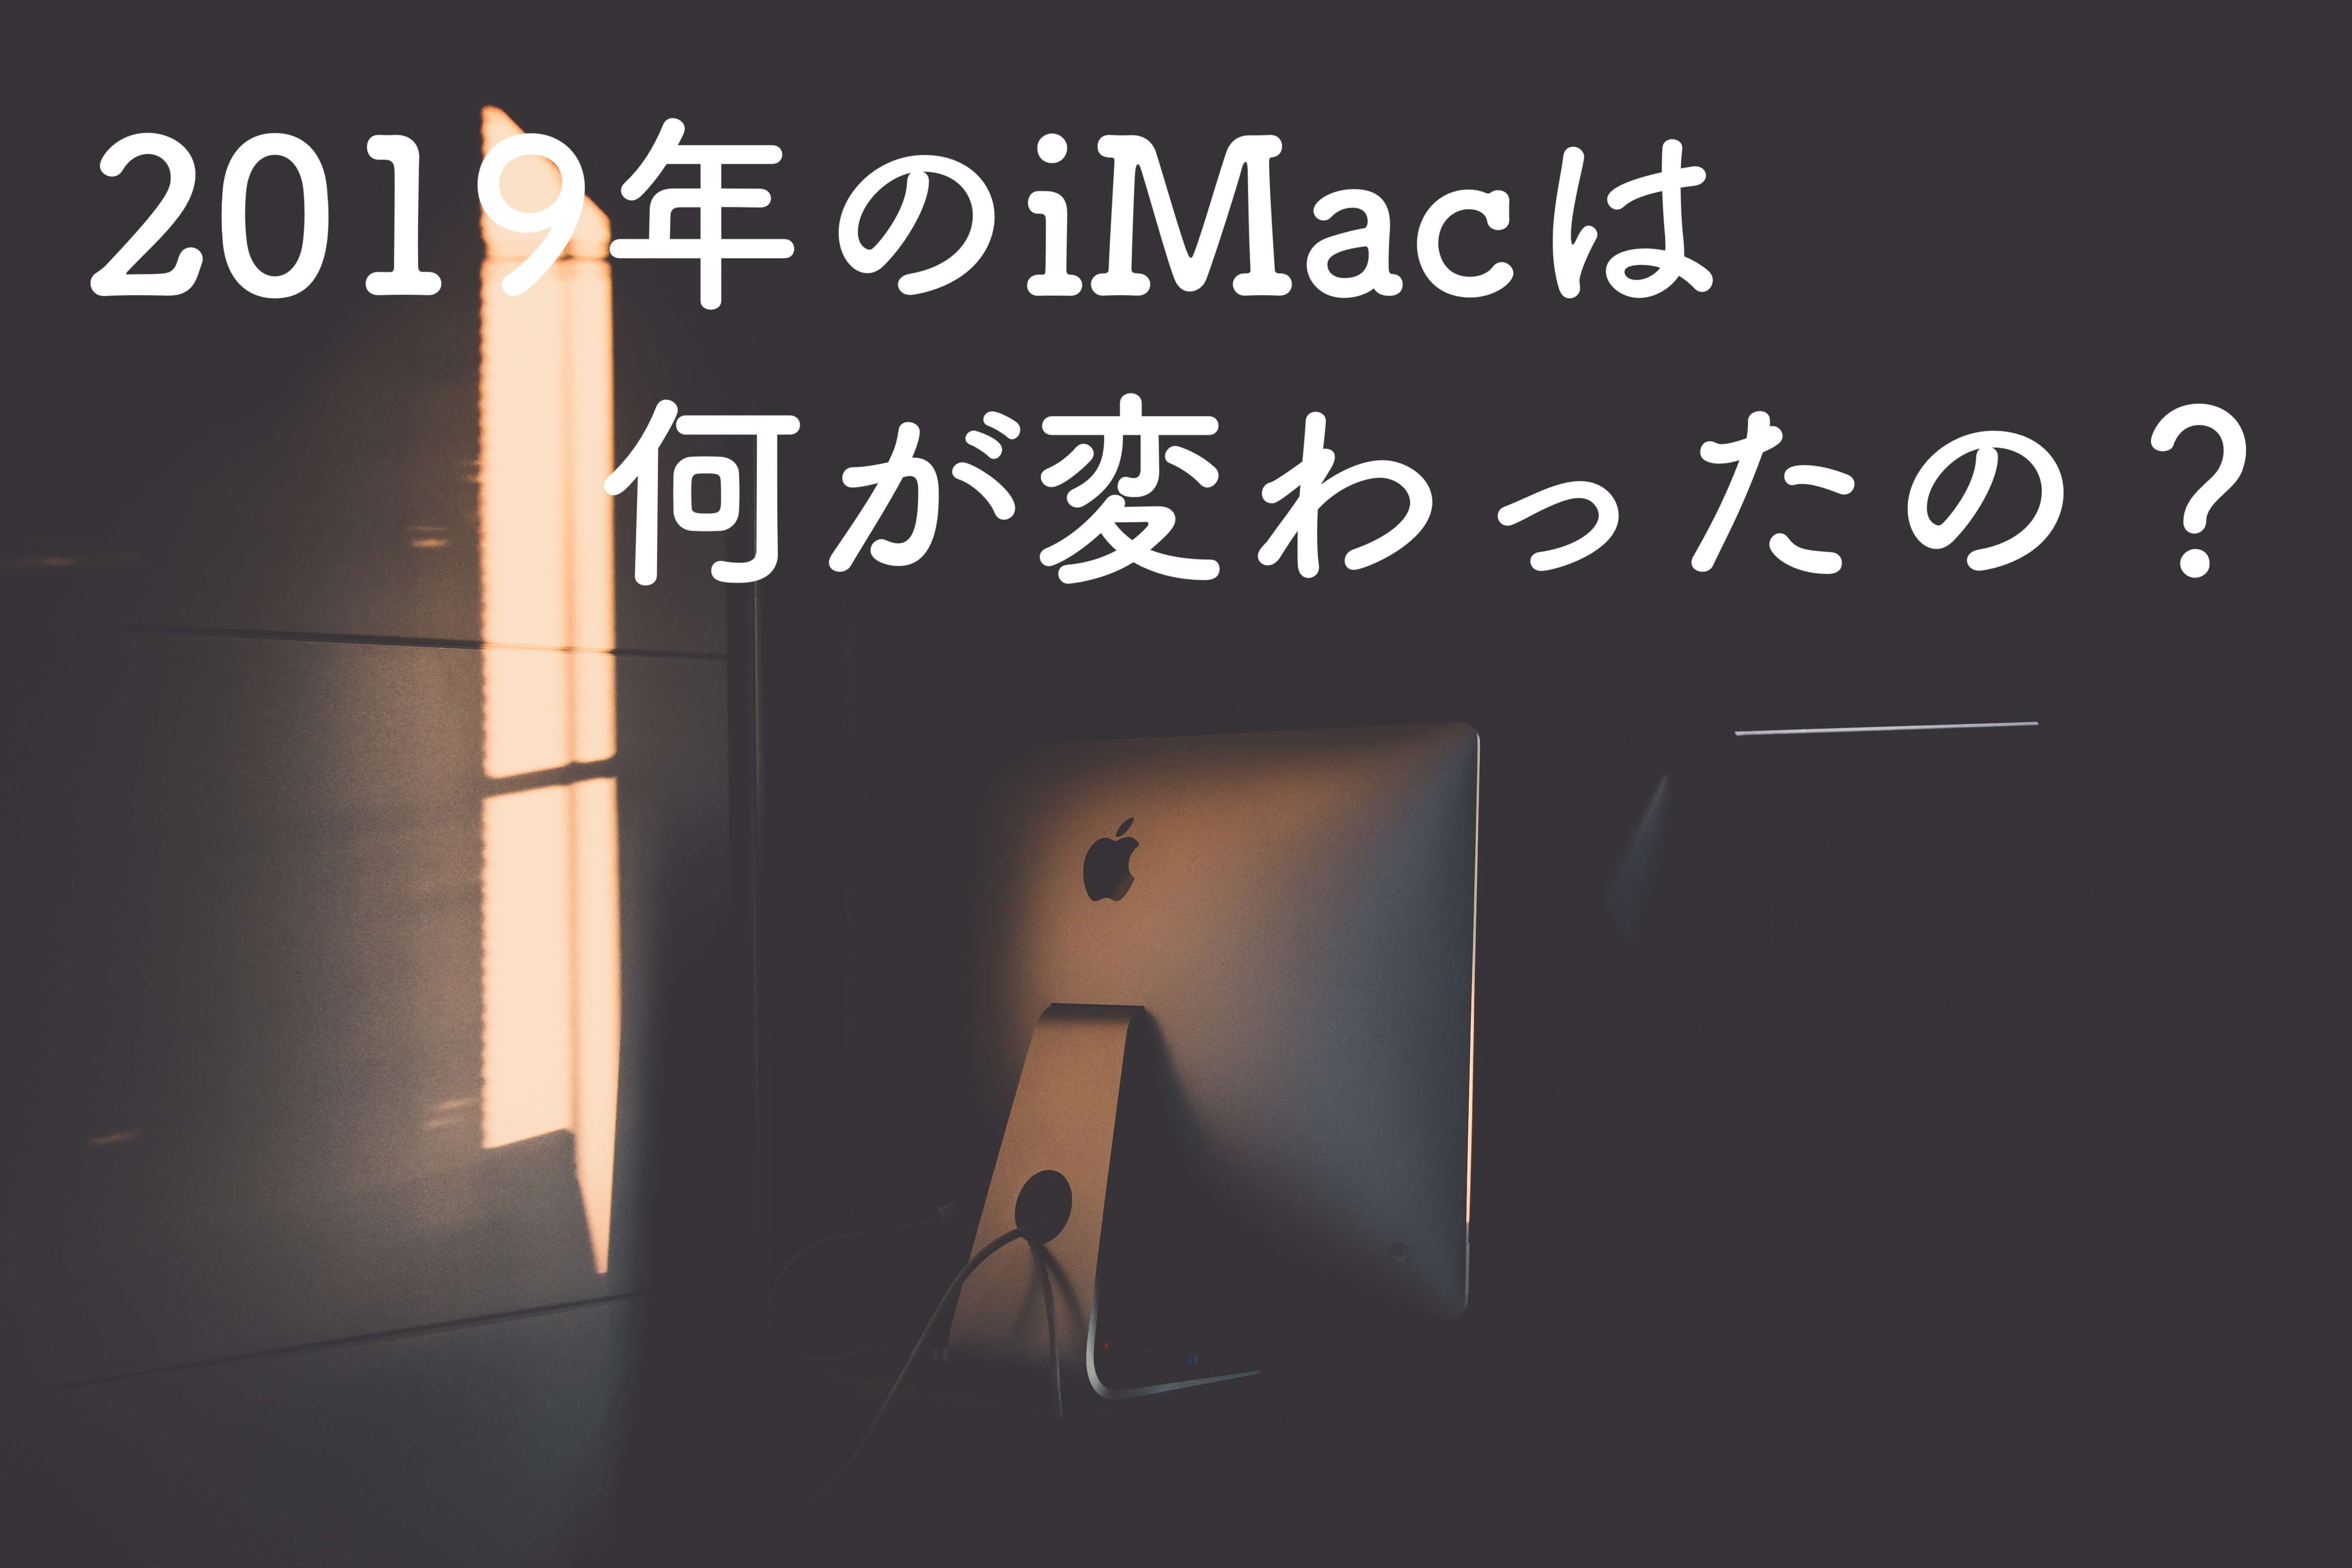 iMac (2019)は何が変わったの？2017年版と５つのポイントを比較してみた